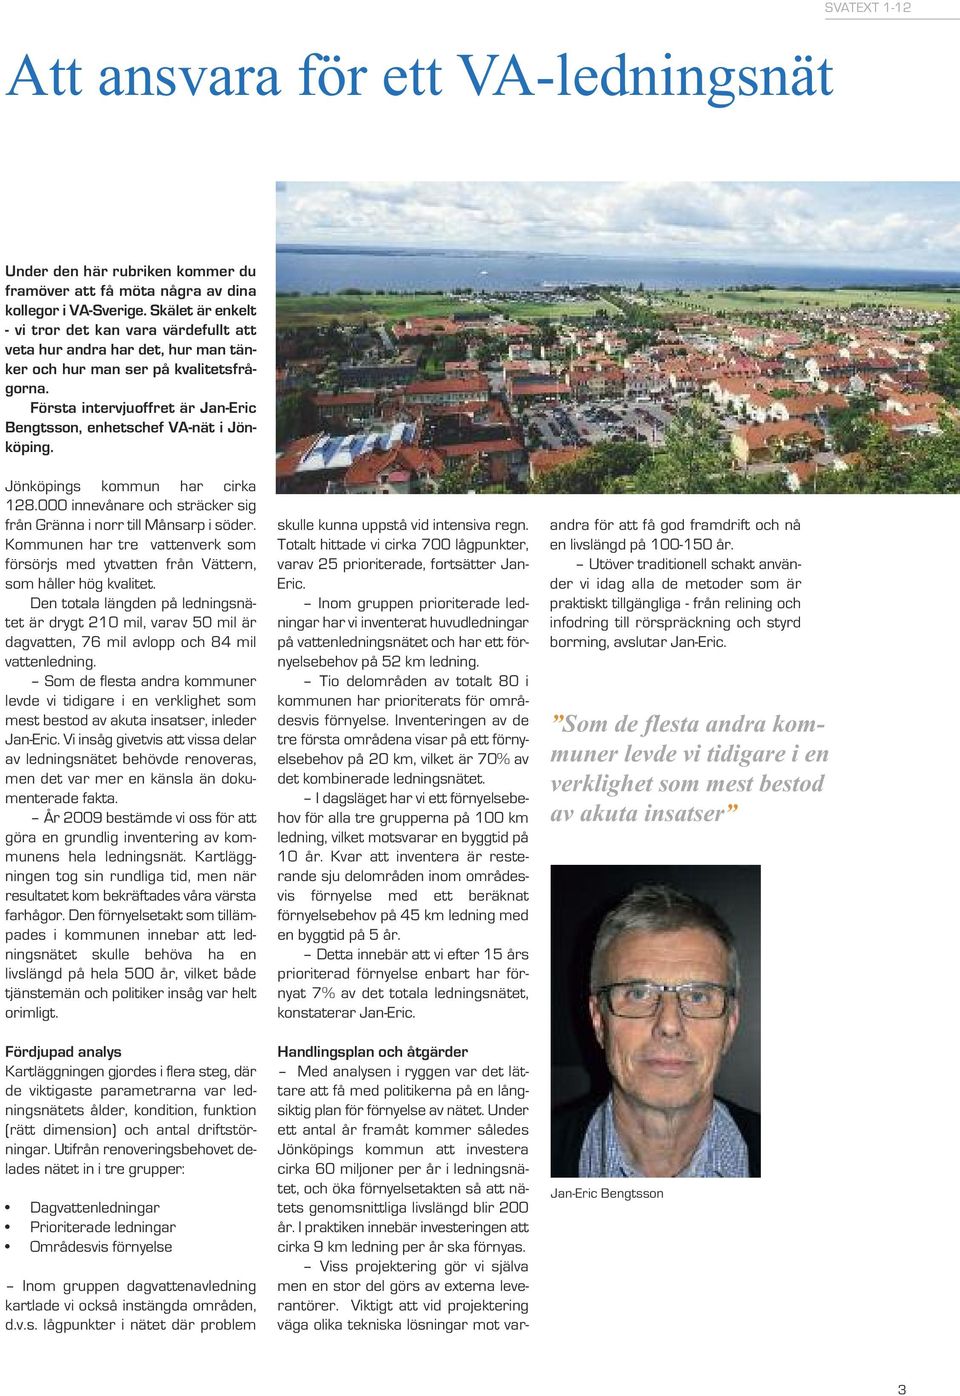 Första intervjuoffret är Jan-Eric Bengtsson, enhetschef VA-nät i Jönköping. Jönköpings kommun har cirka 128.000 innevånare och sträcker sig från Gränna i norr till Månsarp i söder.